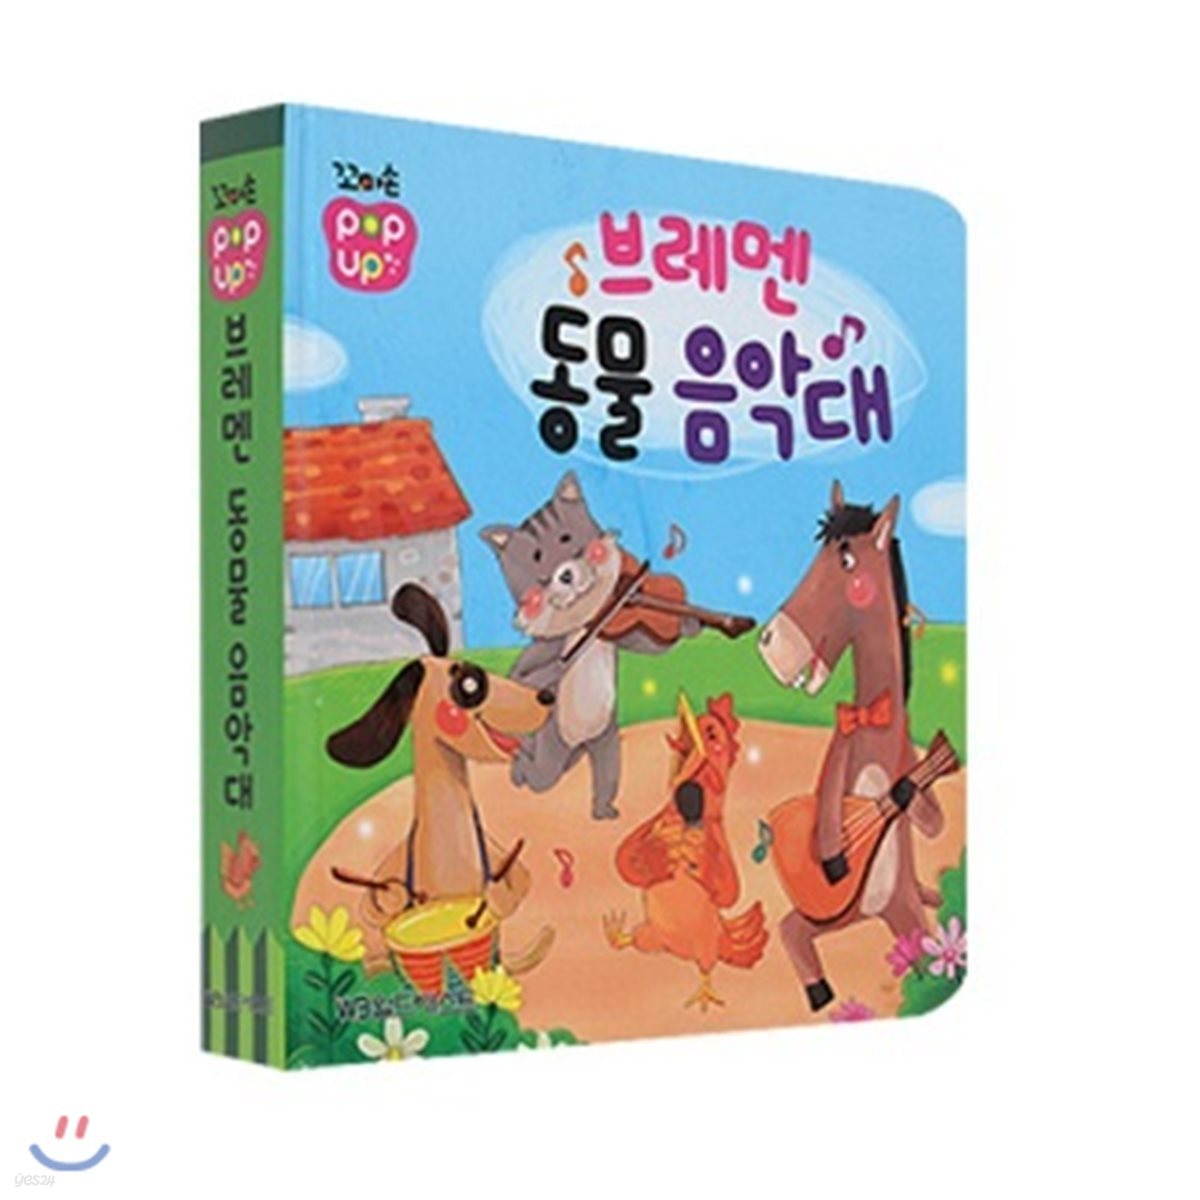 꼬마손 팝업북 명작동화  -브레맨 음악대